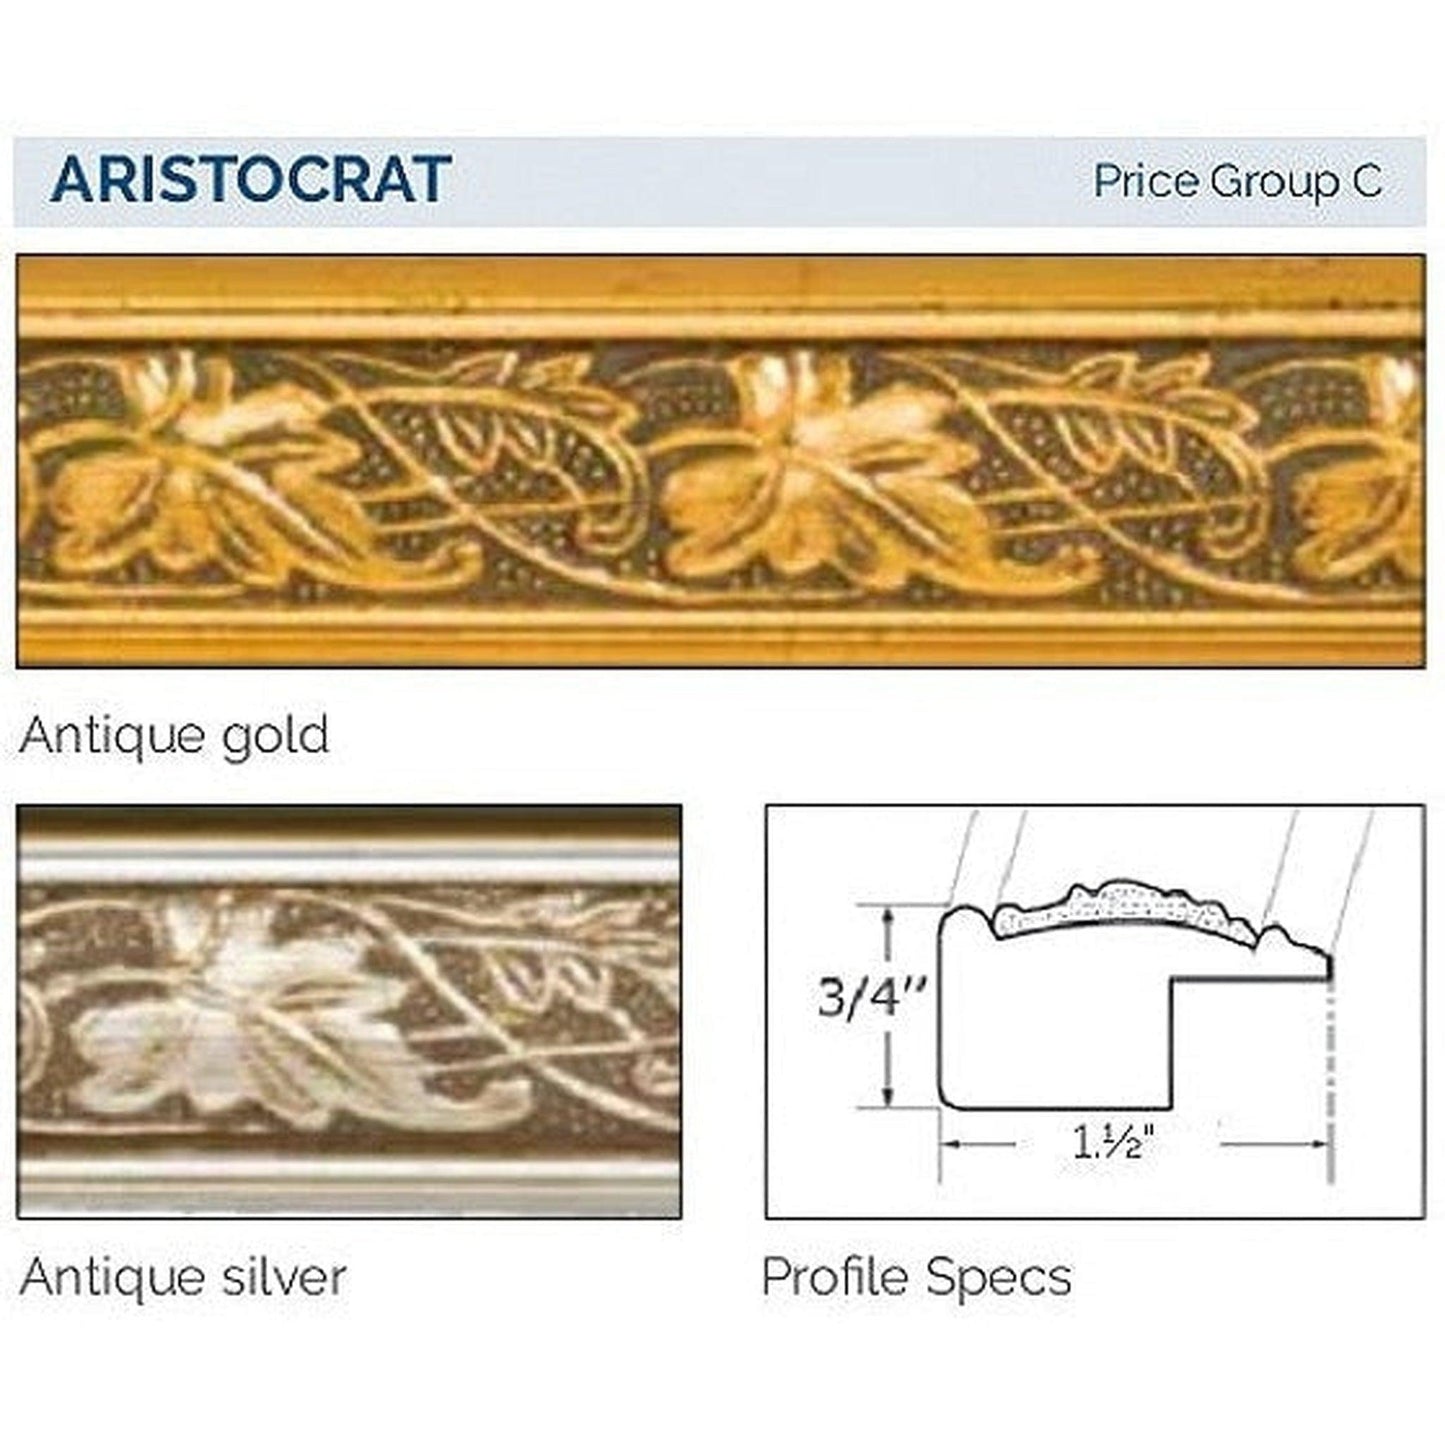 Afina Signature 58" x 30" Aristocrat Antique Gold Recessed Four Door Medicine Cabinet With Beveled Edge Mirror